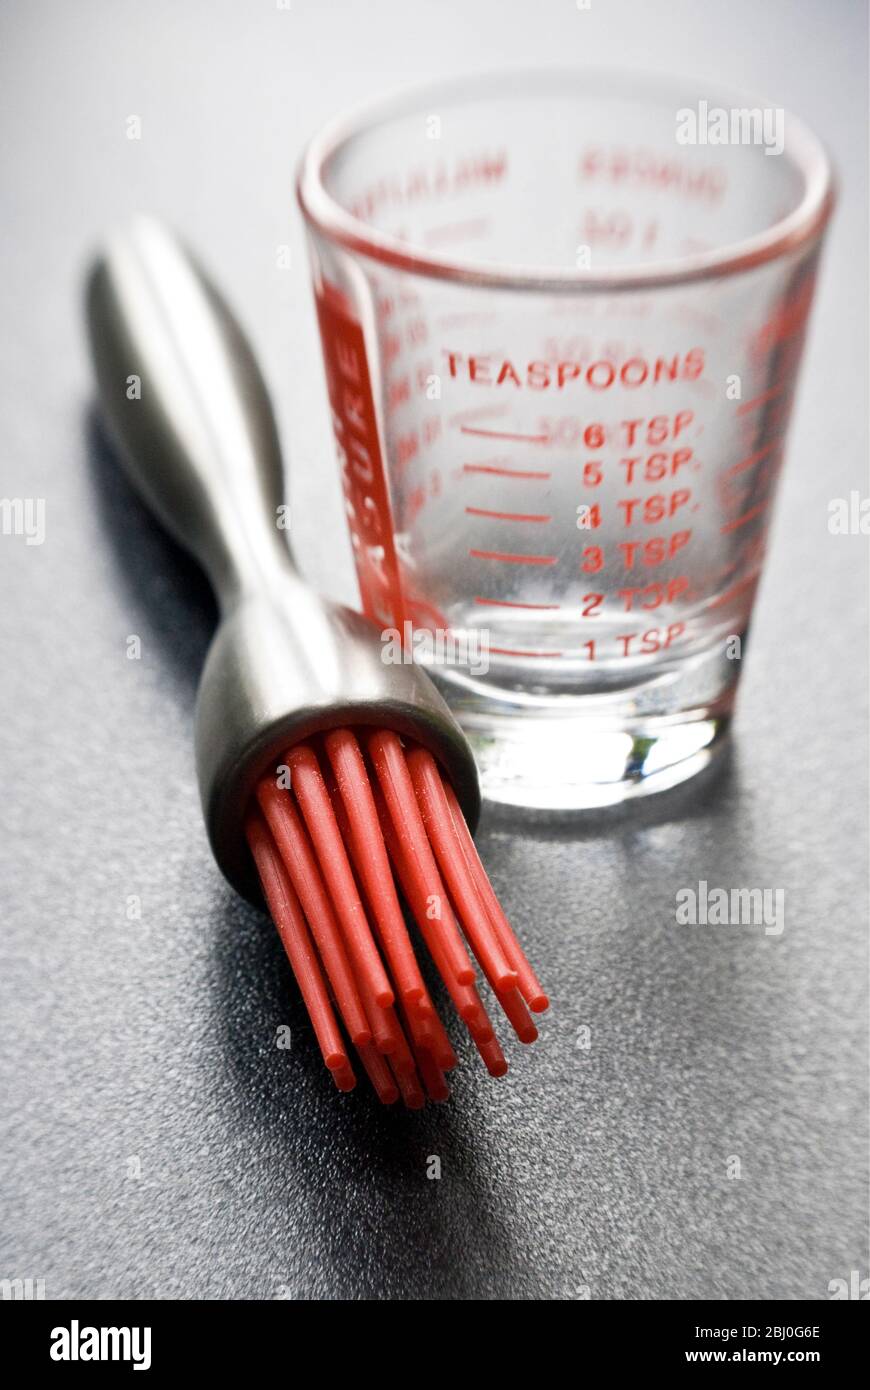 Moderne Teigbürste mit roten Silikon-Borsten mit einem kleinen Messglas auf dunkler strukturierter Oberfläche - Stockfoto